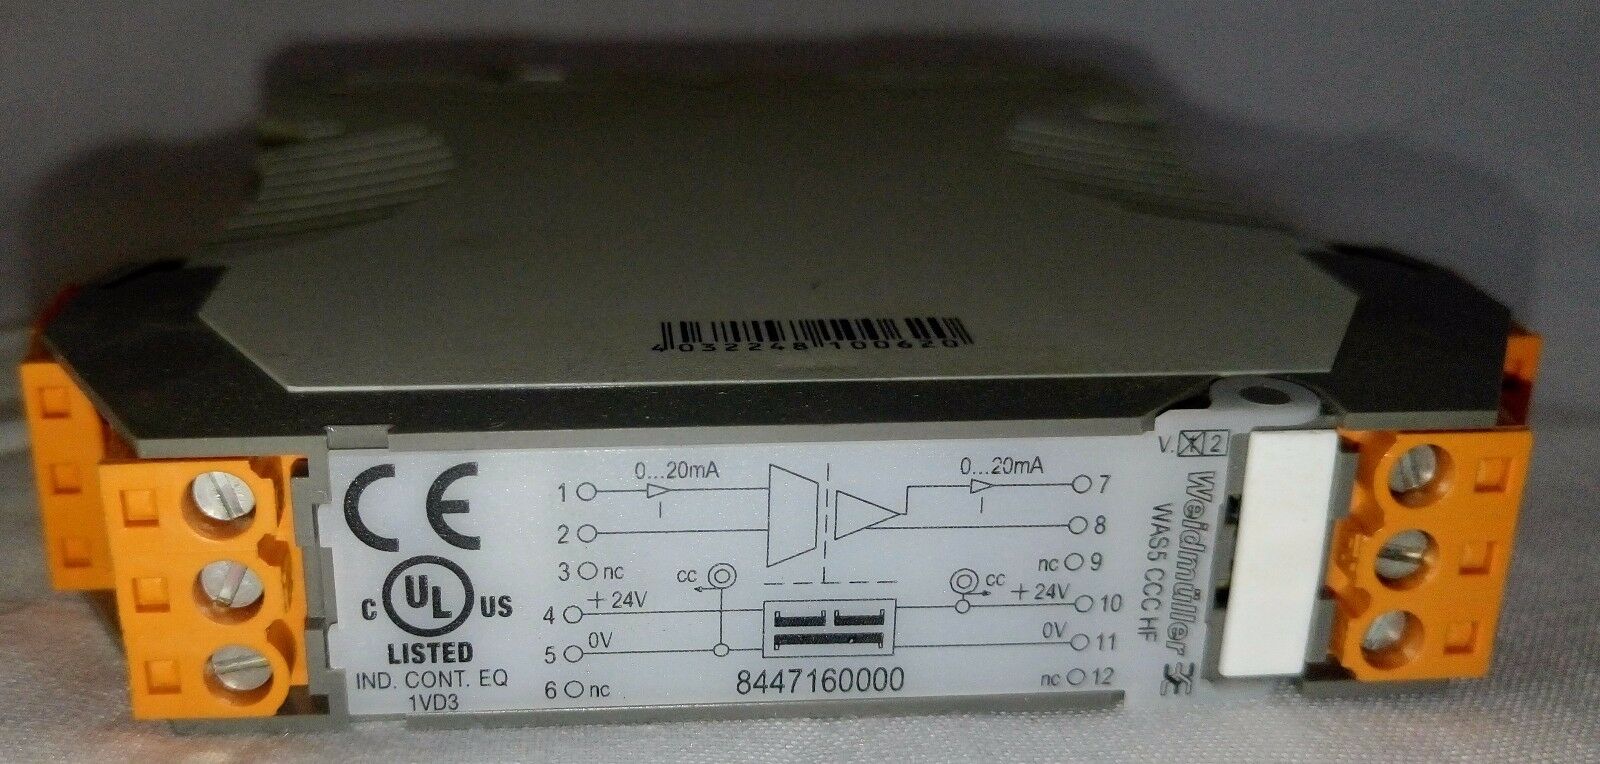 魏德米勒8447160000调节器信号模拟0-20MA为5 CCC HF 0-20/0-20MA 